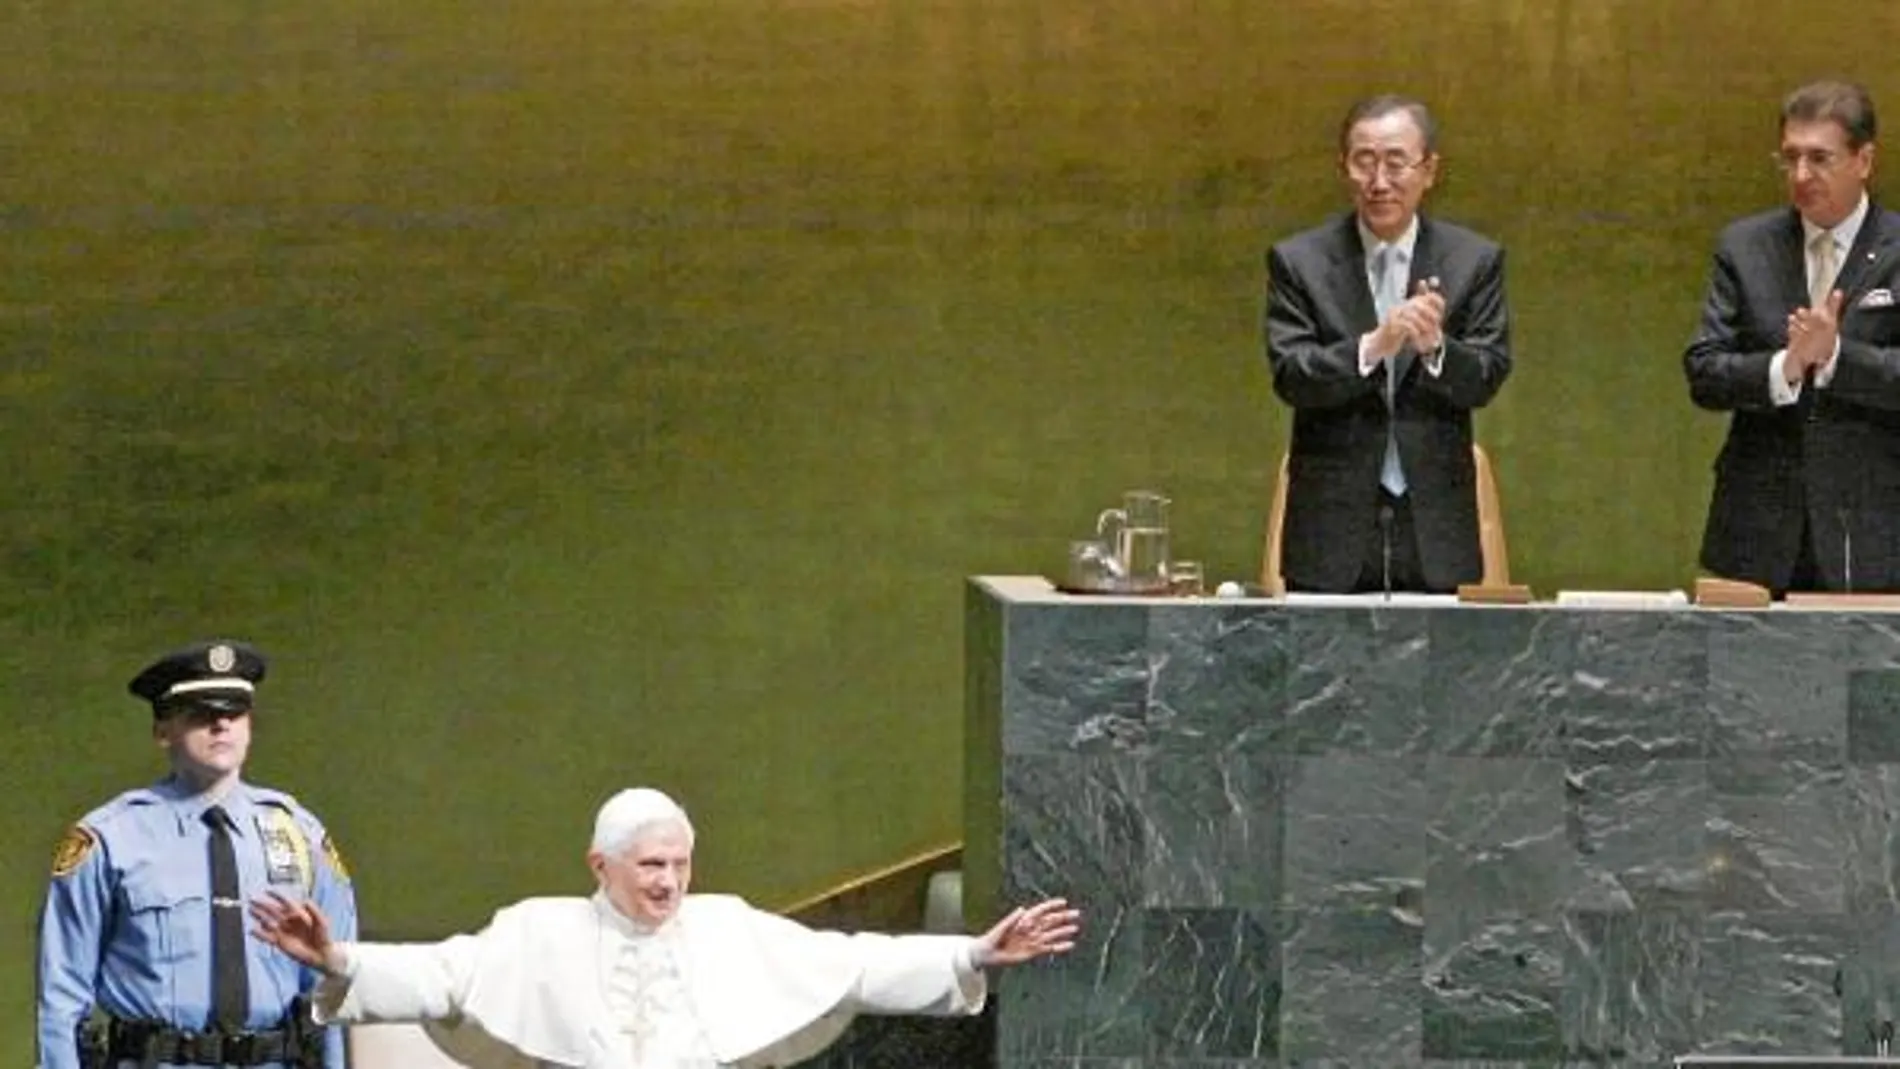 Para el Vaticano, Naciones Unidas (en la imagen, Benedicto XVI en su sede de Nueva York) debe ser «punto de referencia» de la reforma